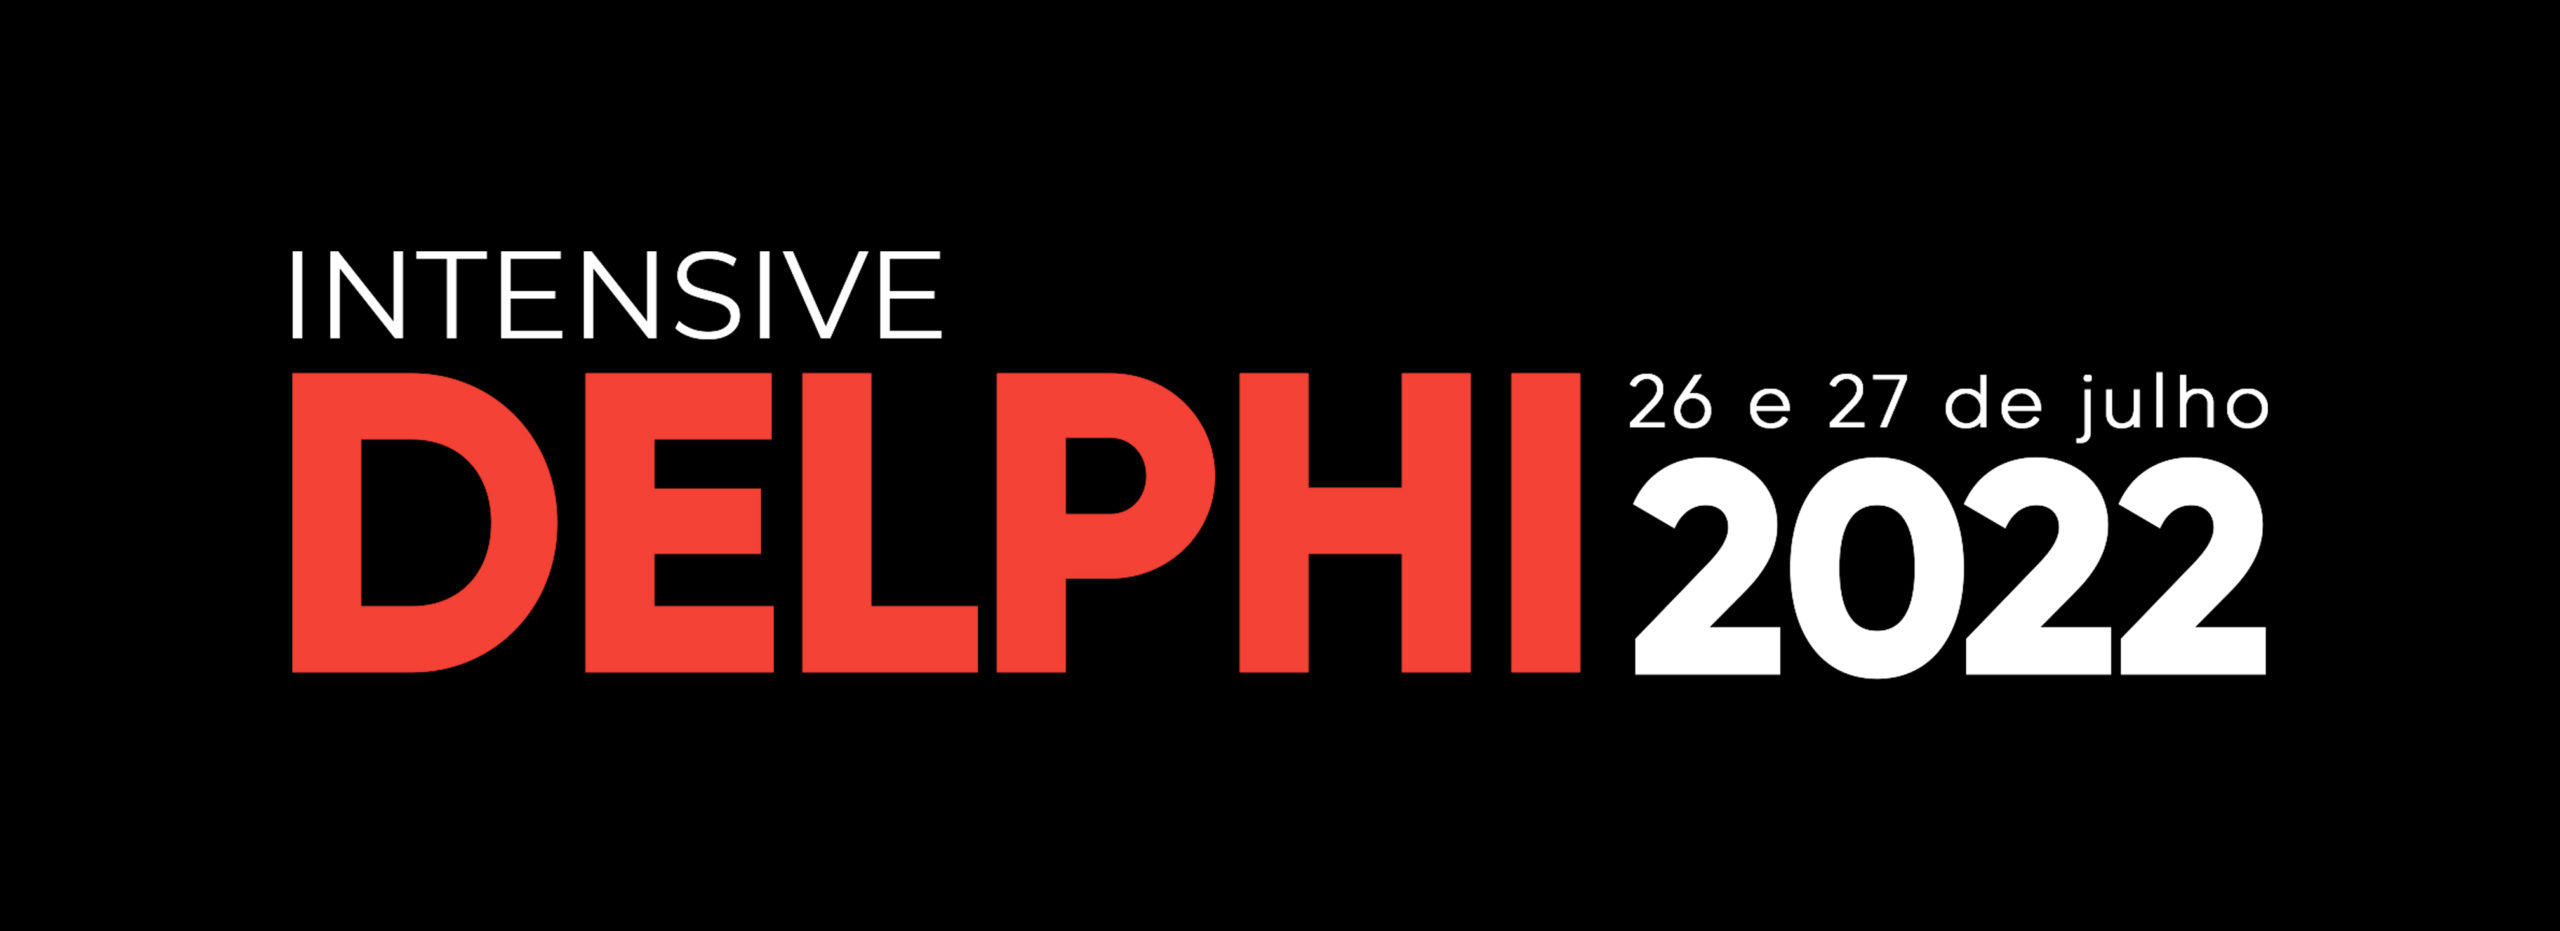 Intensive Delphi 2022 - Dias 26 e 27 de julho de 2022!